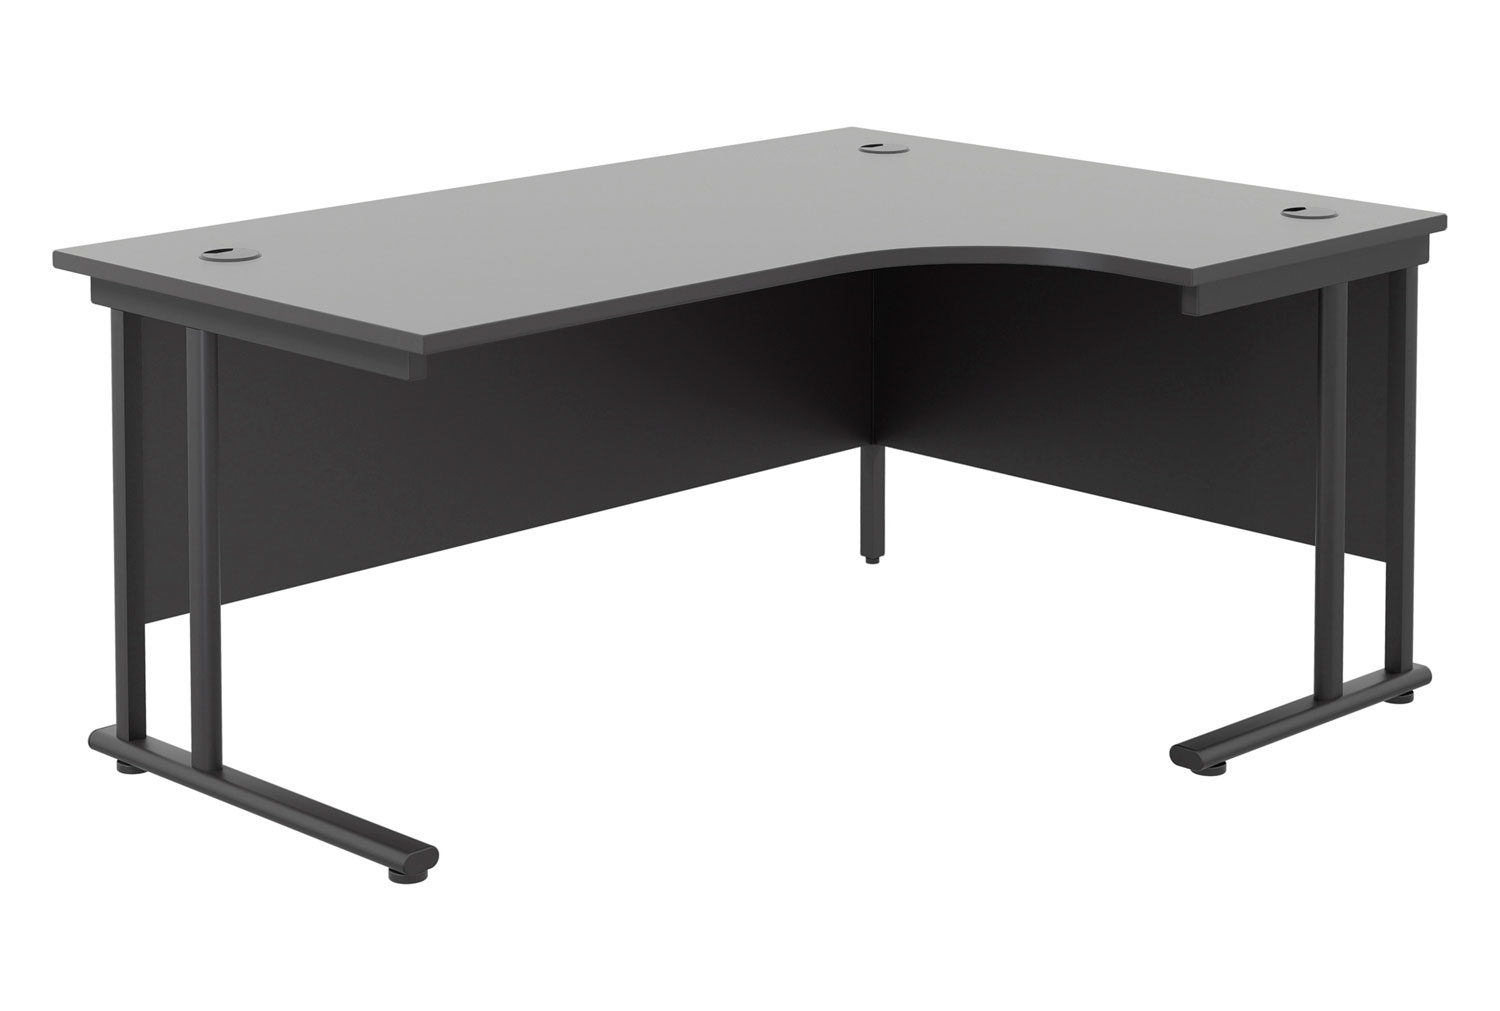 All Black Double C-Leg Right Hand Ergonomic Office Desk, 160wx120/80dx73h (cm), Fully Installed